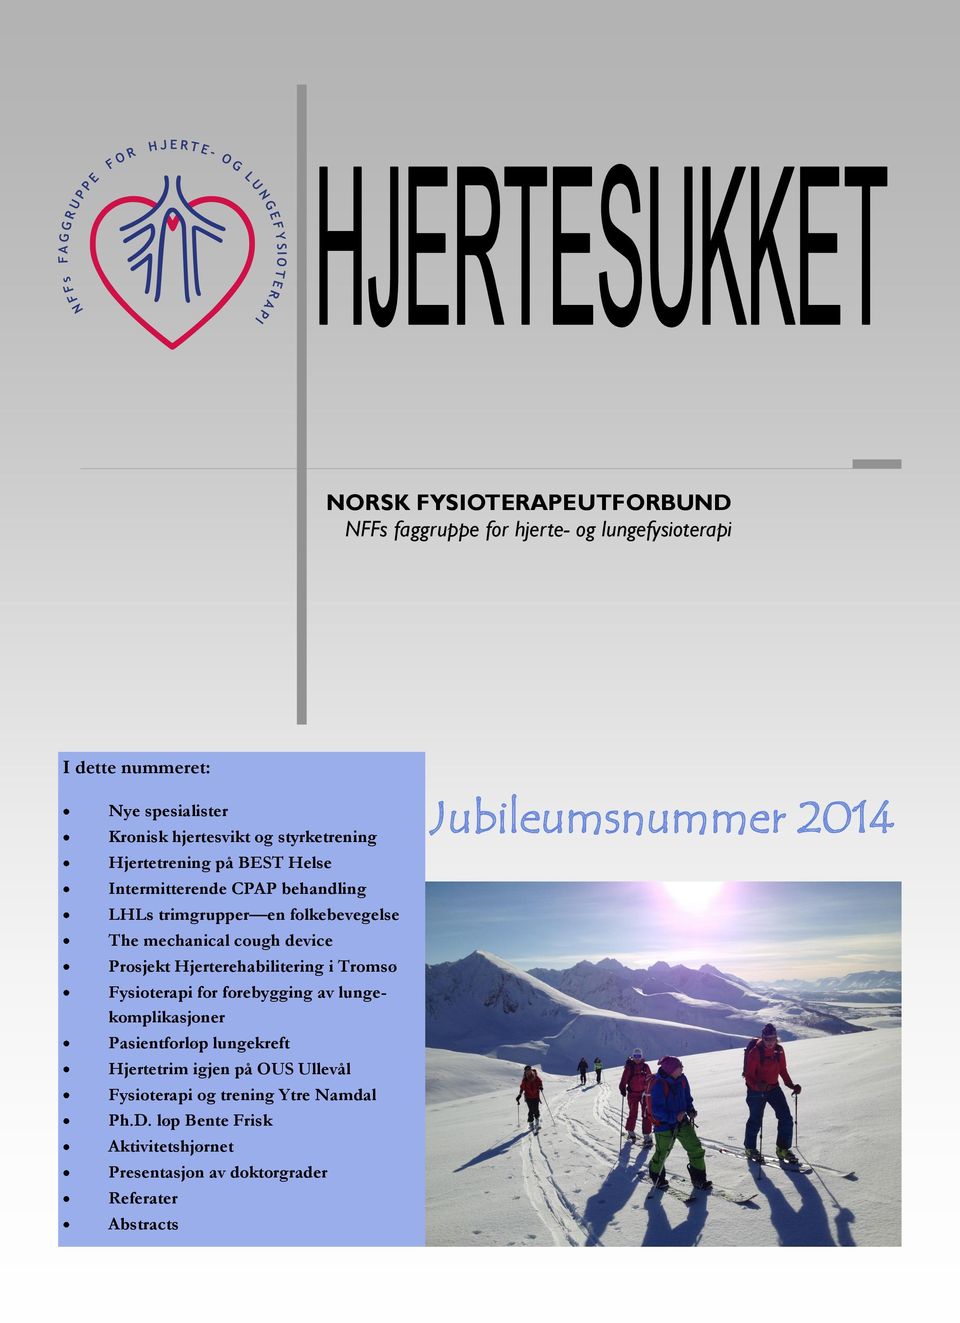 Prosjekt Hjerterehabilitering i Tromsø Fysioterapi for forebygging av lungekomplikasjoner Pasientforløp lungekreft Hjertetrim igjen på OUS